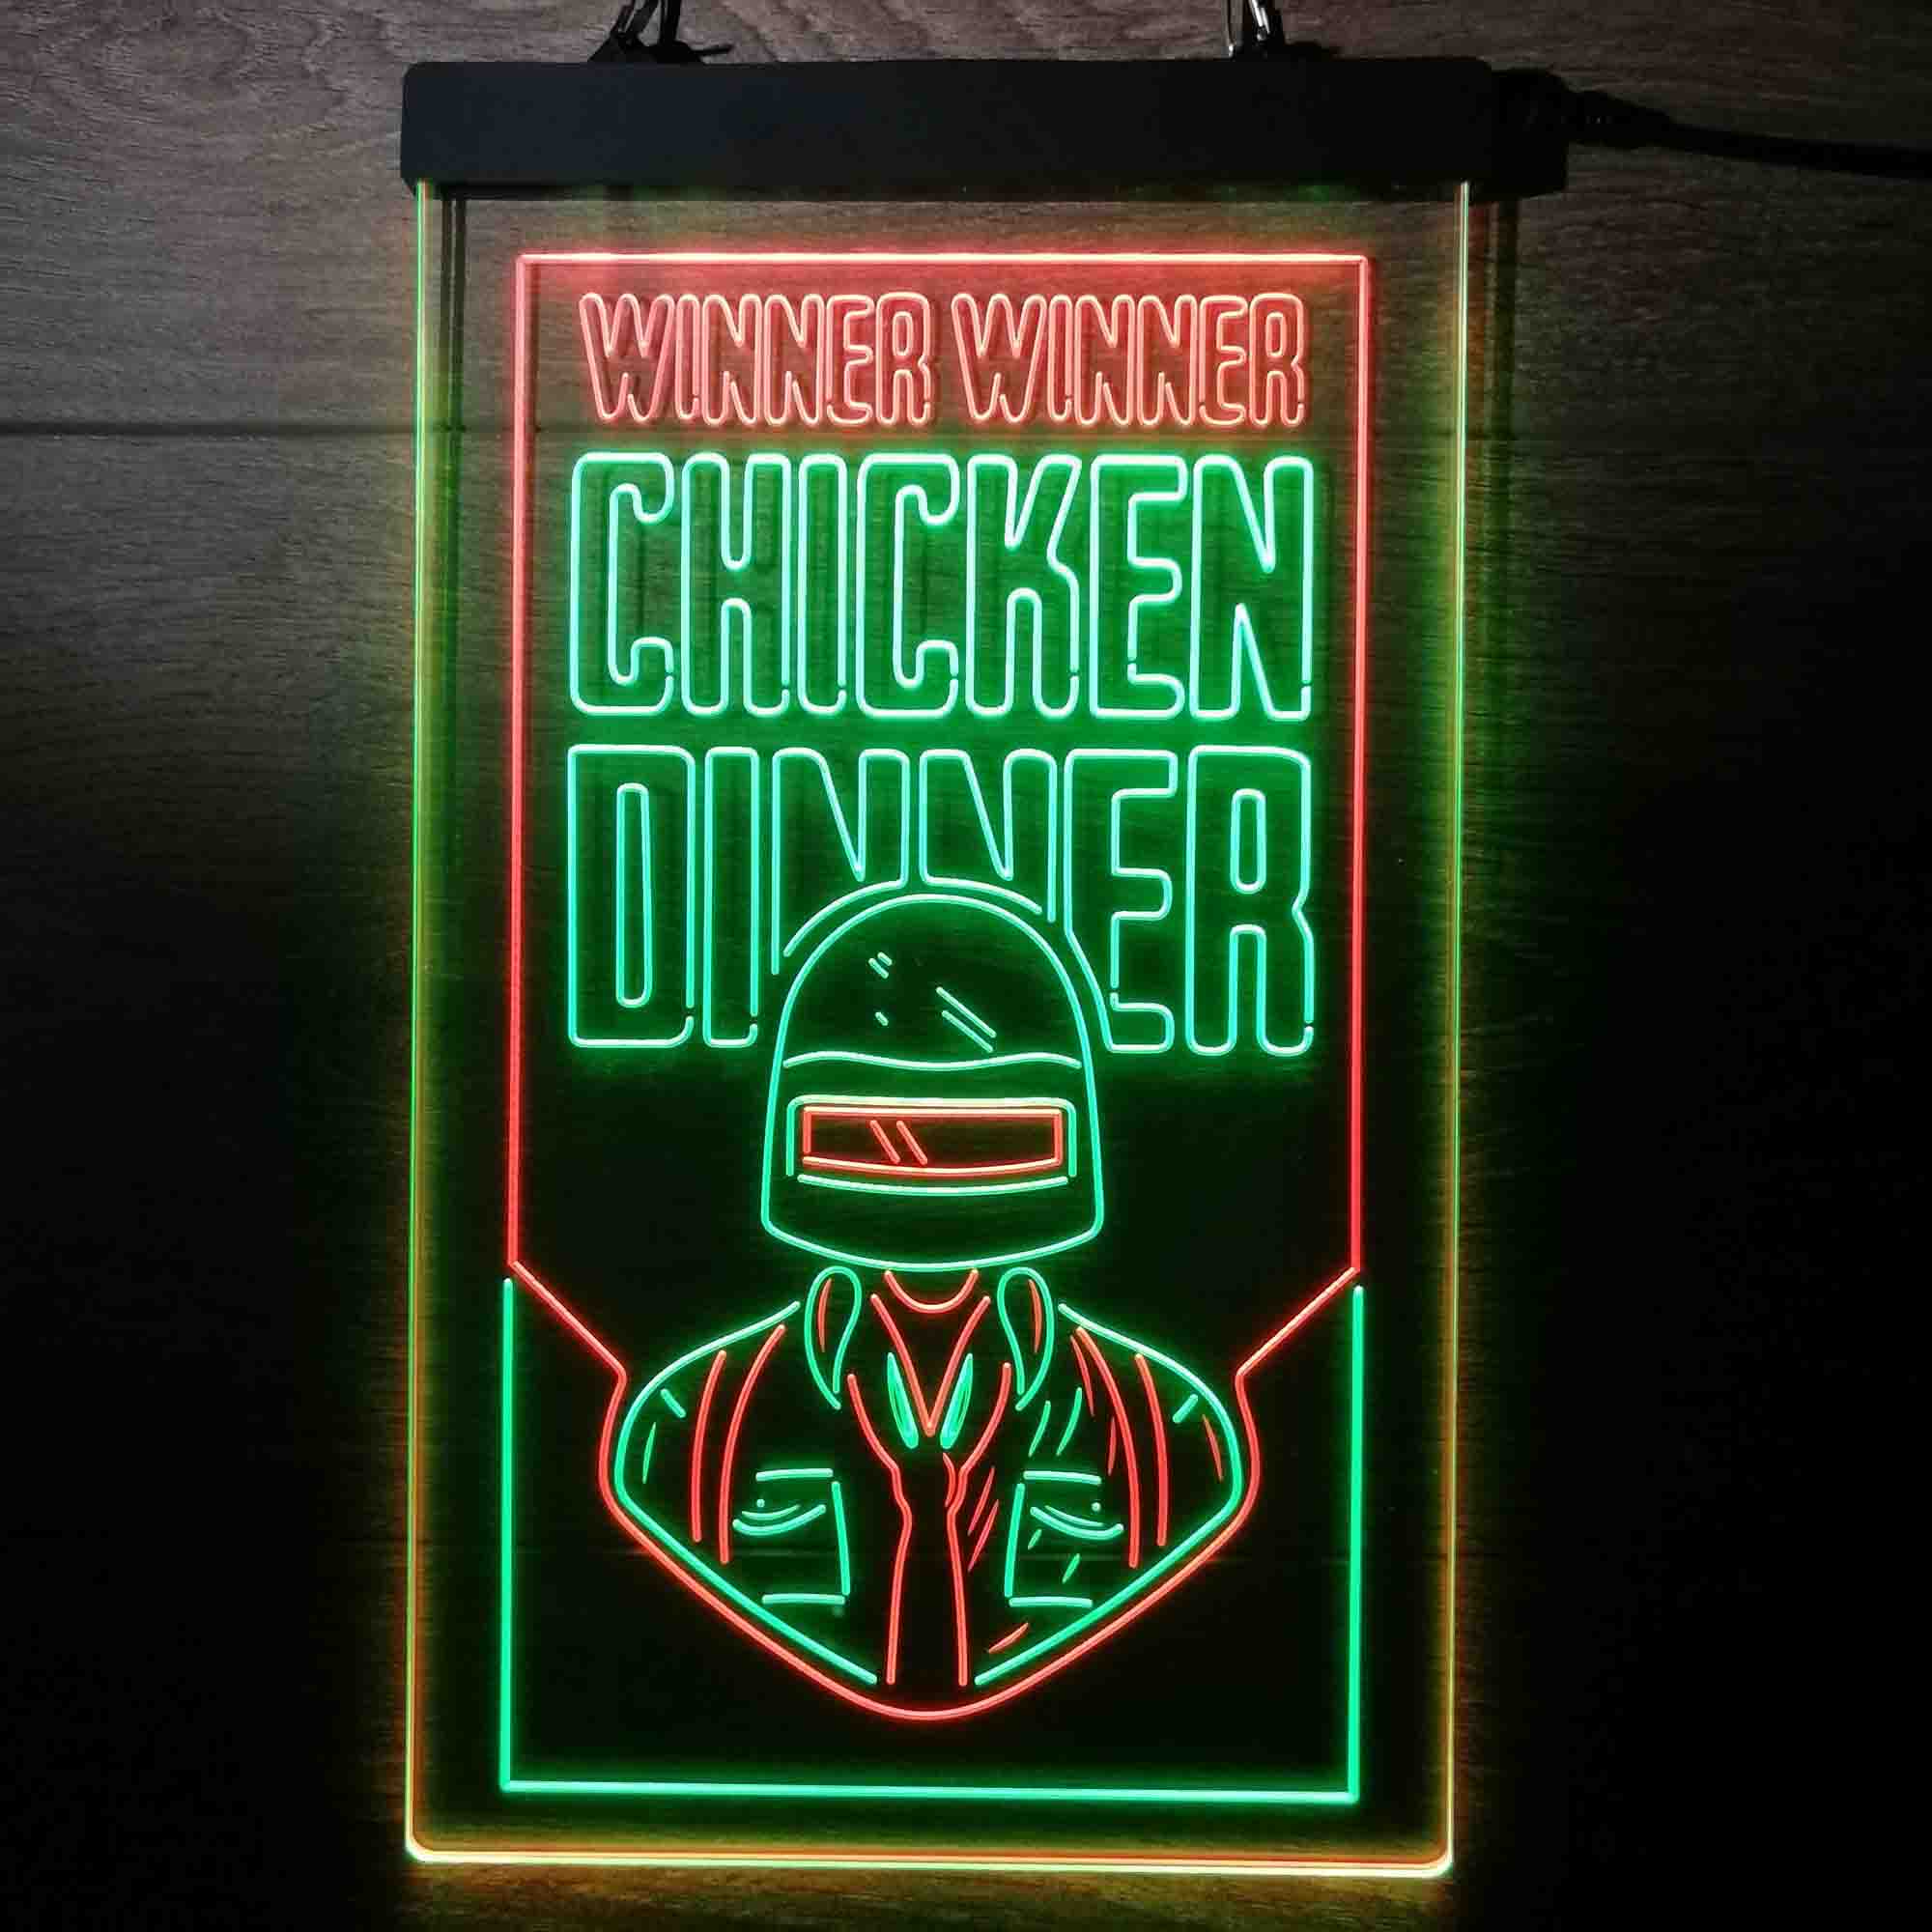 PUBG BATTLEGROUNDS Winner Winener Chicken Dinner Game Room Neon Light LED Sign